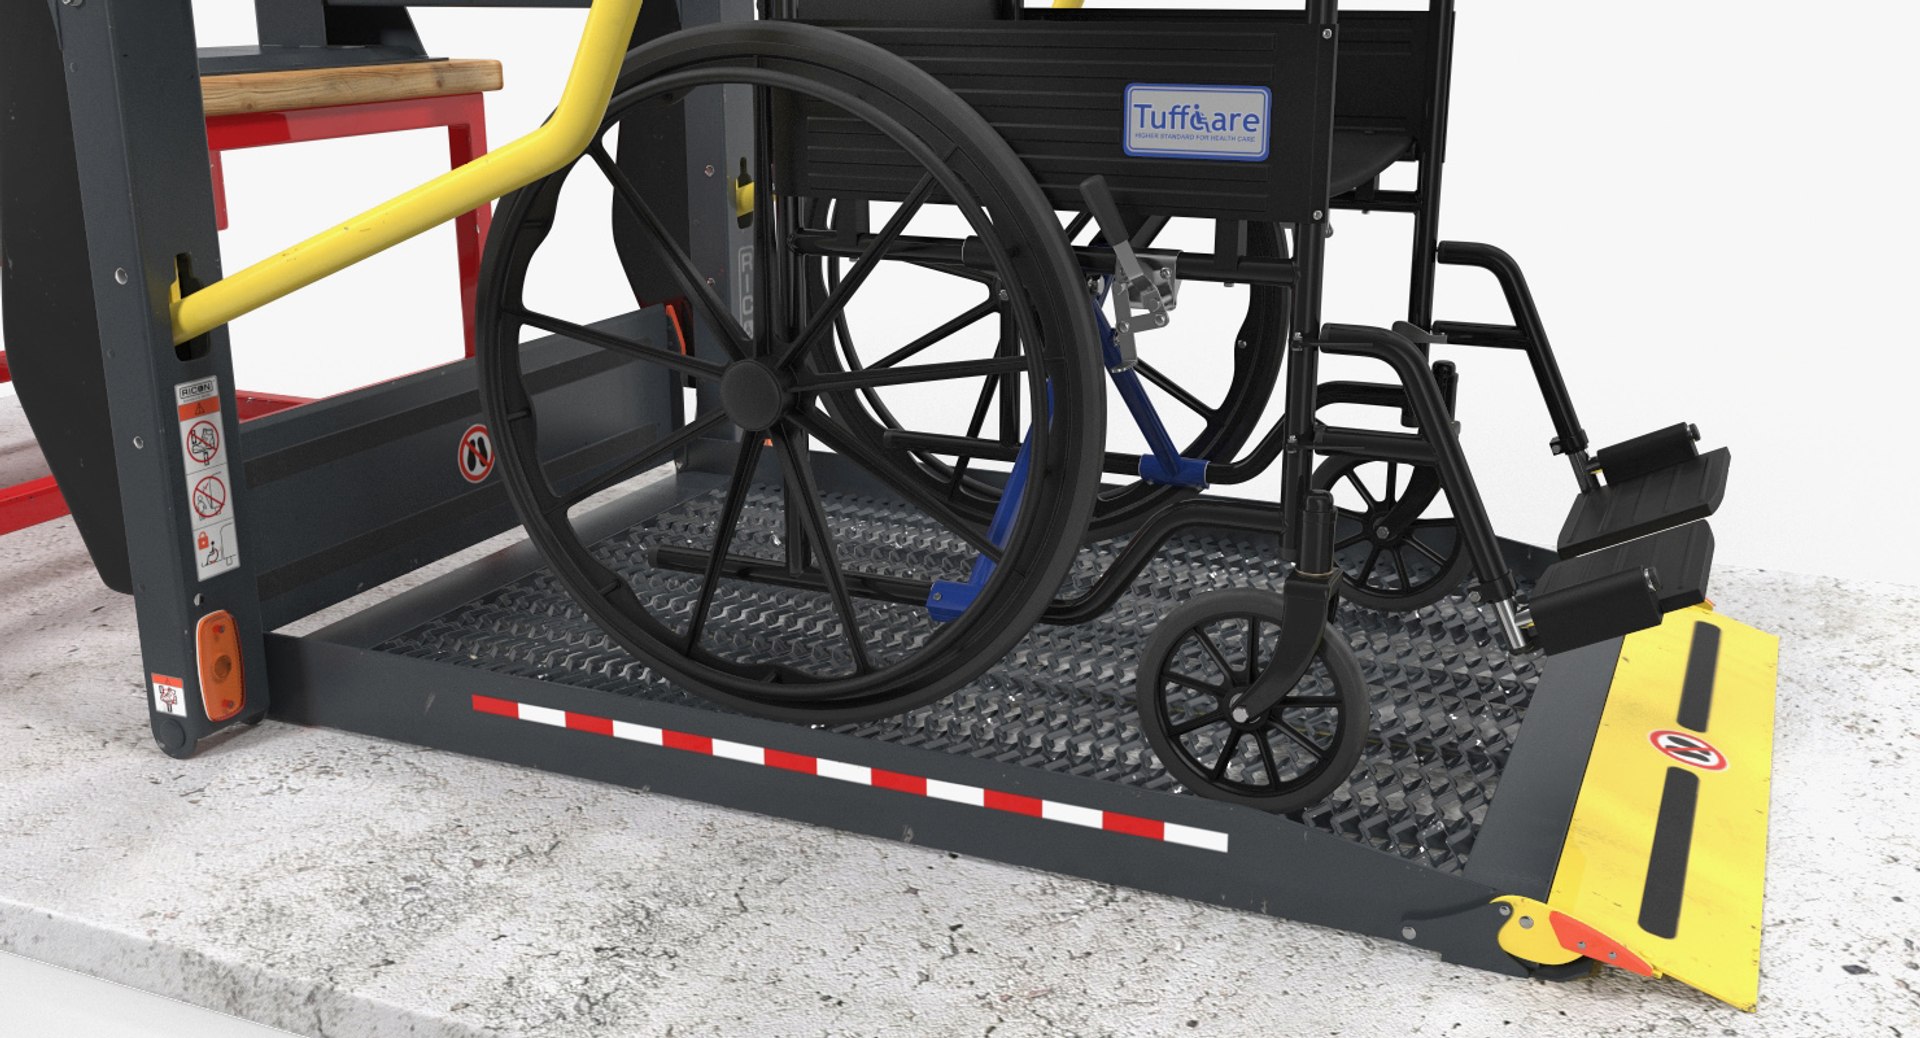 Wheelchair Lift 3D Model - TurboSquid 1604642